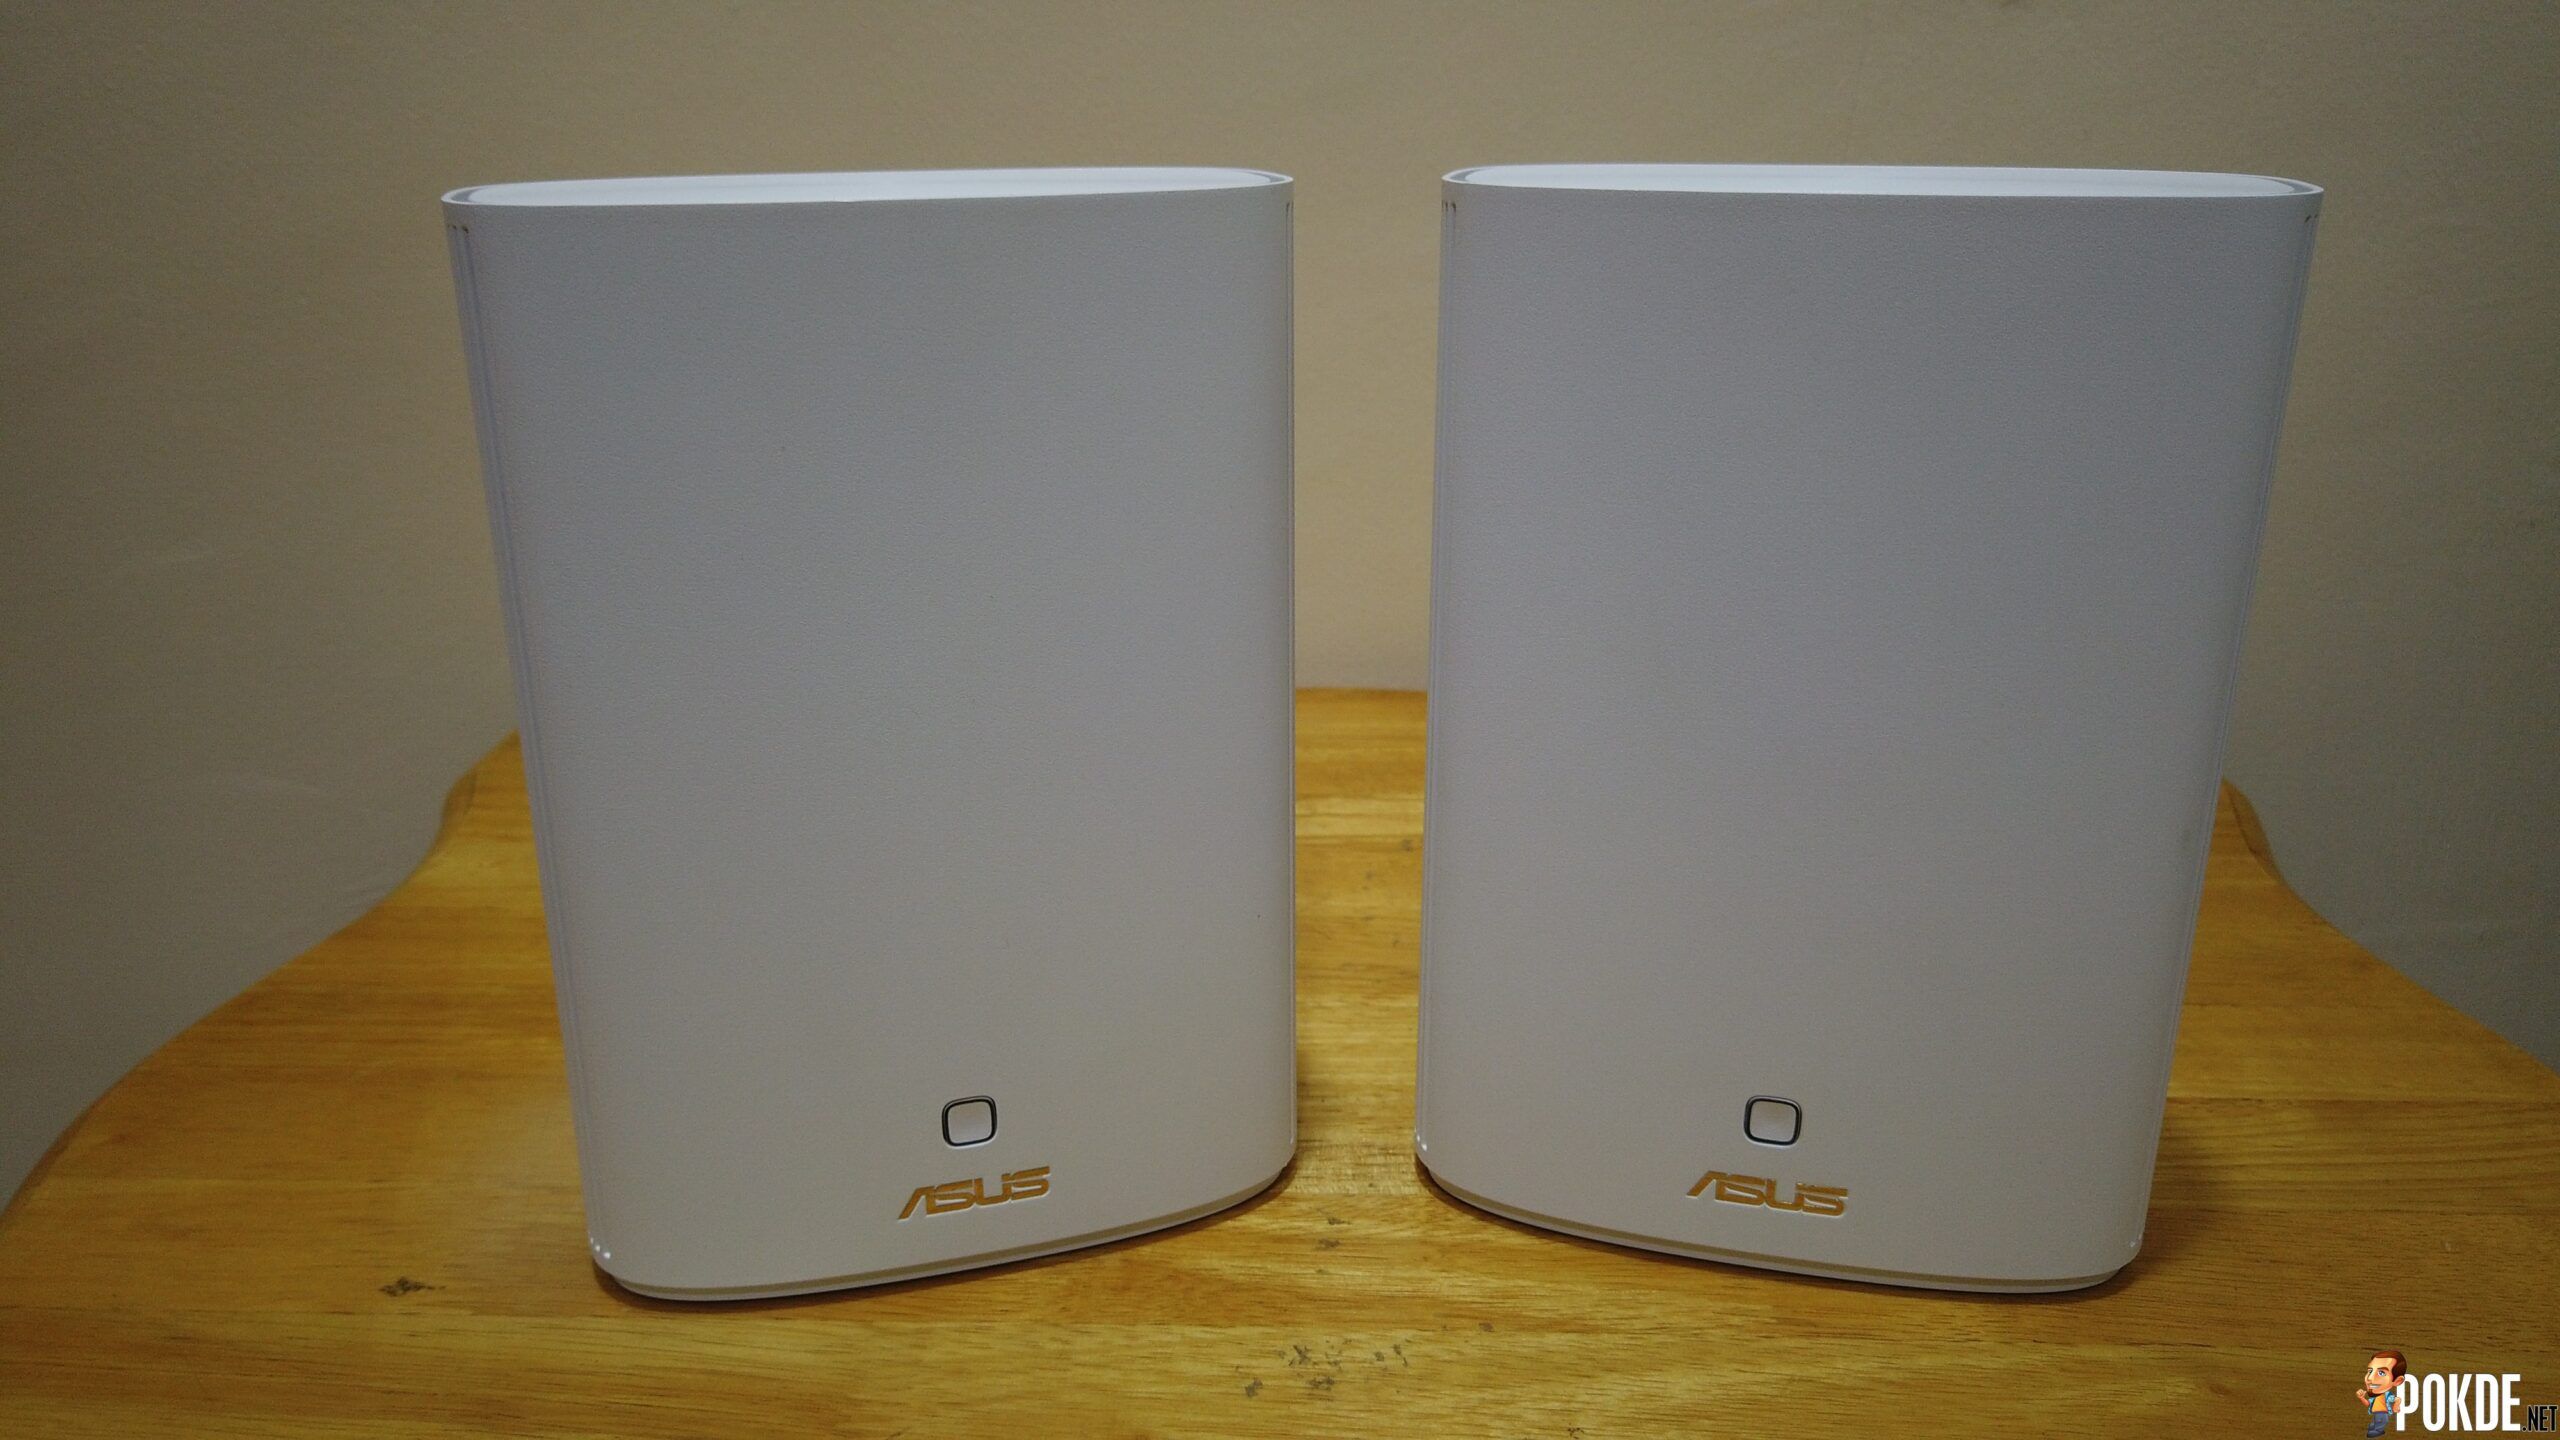 ASUS ZenWiFi AX Hybrid (XP4) Mesh Review - 5,500 sqft Wi-Fi Coverage 30